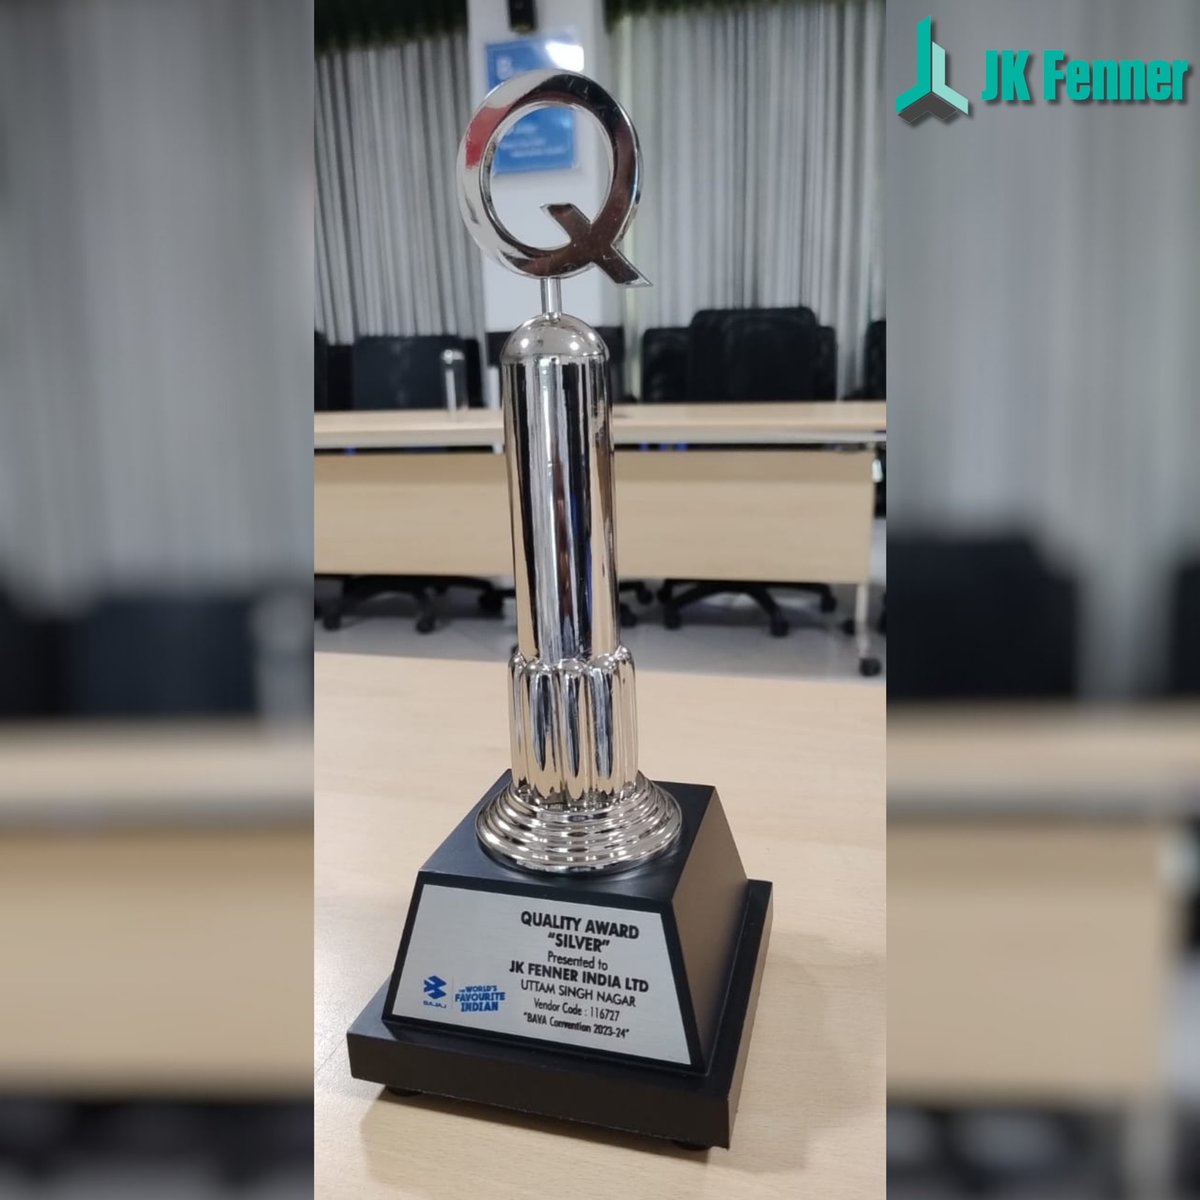 We are honoured to receive the prestigious BAL Quality Award by Bajaj Auto Ltd., Pantnagar, under the polymer category for 2023-24
#JKFenner #JKEvolve #JKGroup #Award #AwardRecognition #QualityAward #BajajAuto #Pantnagar #BALQualityAward #BajajAuto #Pantnagar #PolymerExcellence